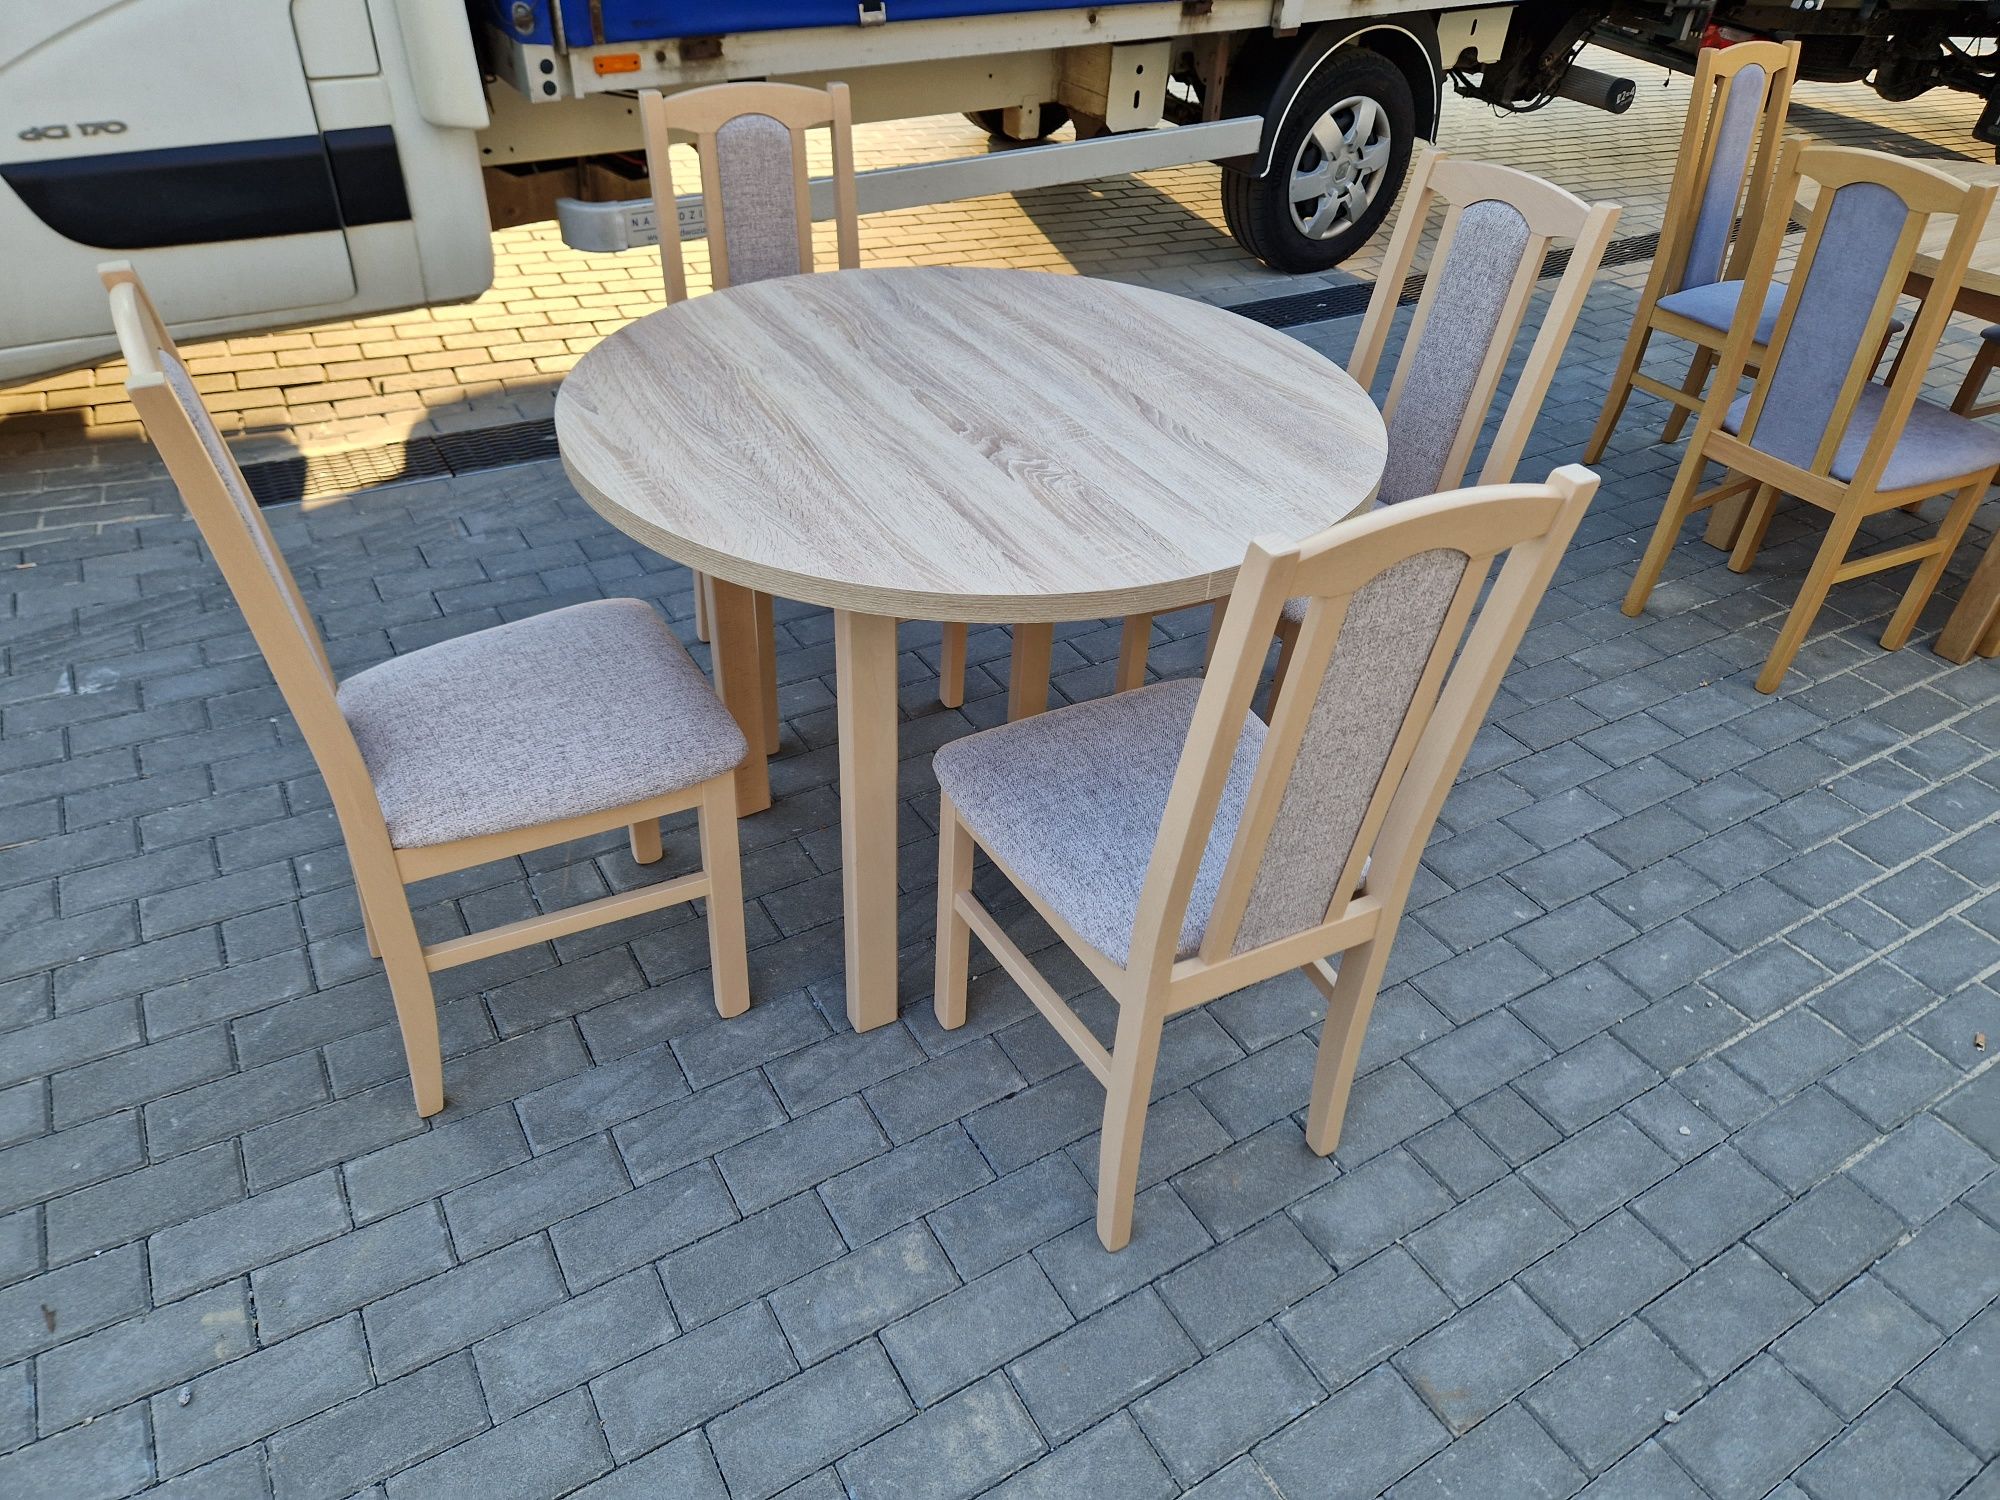 Nowe: Stół okrągły + 4 krzesła, sonoma + kawa z mlekiem , transPL